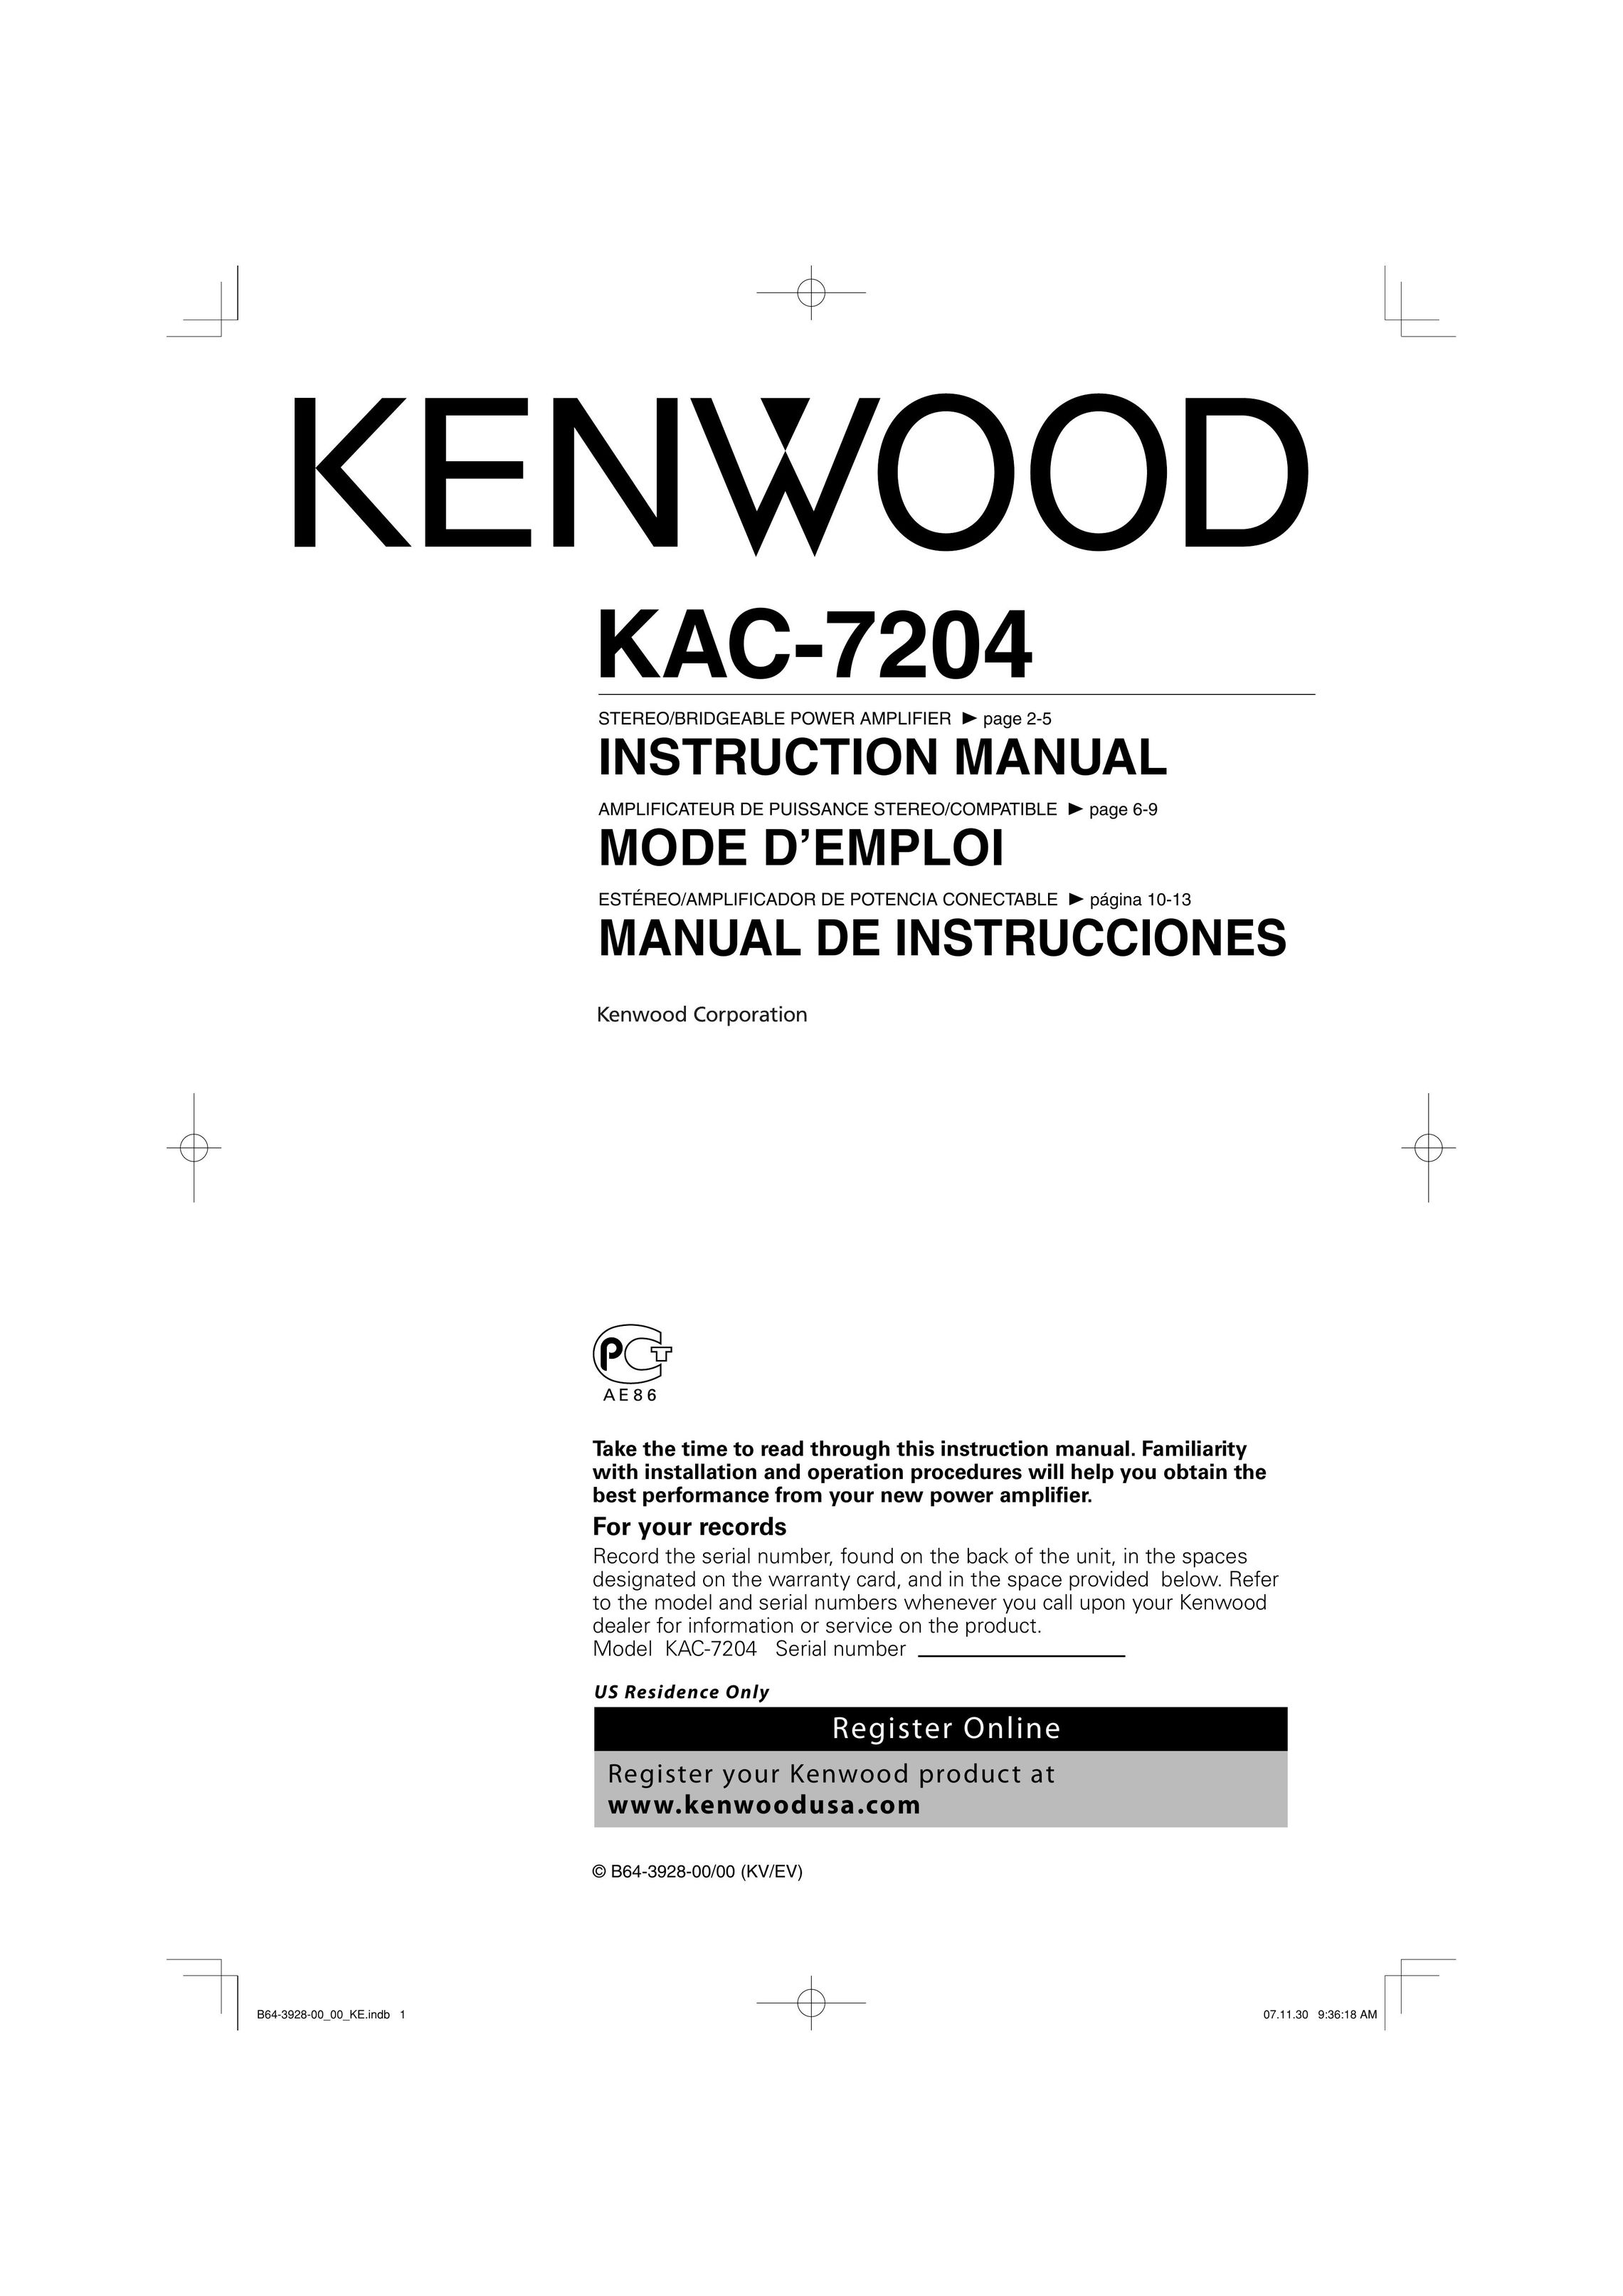 Kenwood KAC-7204 Stereo Amplifier User Manual